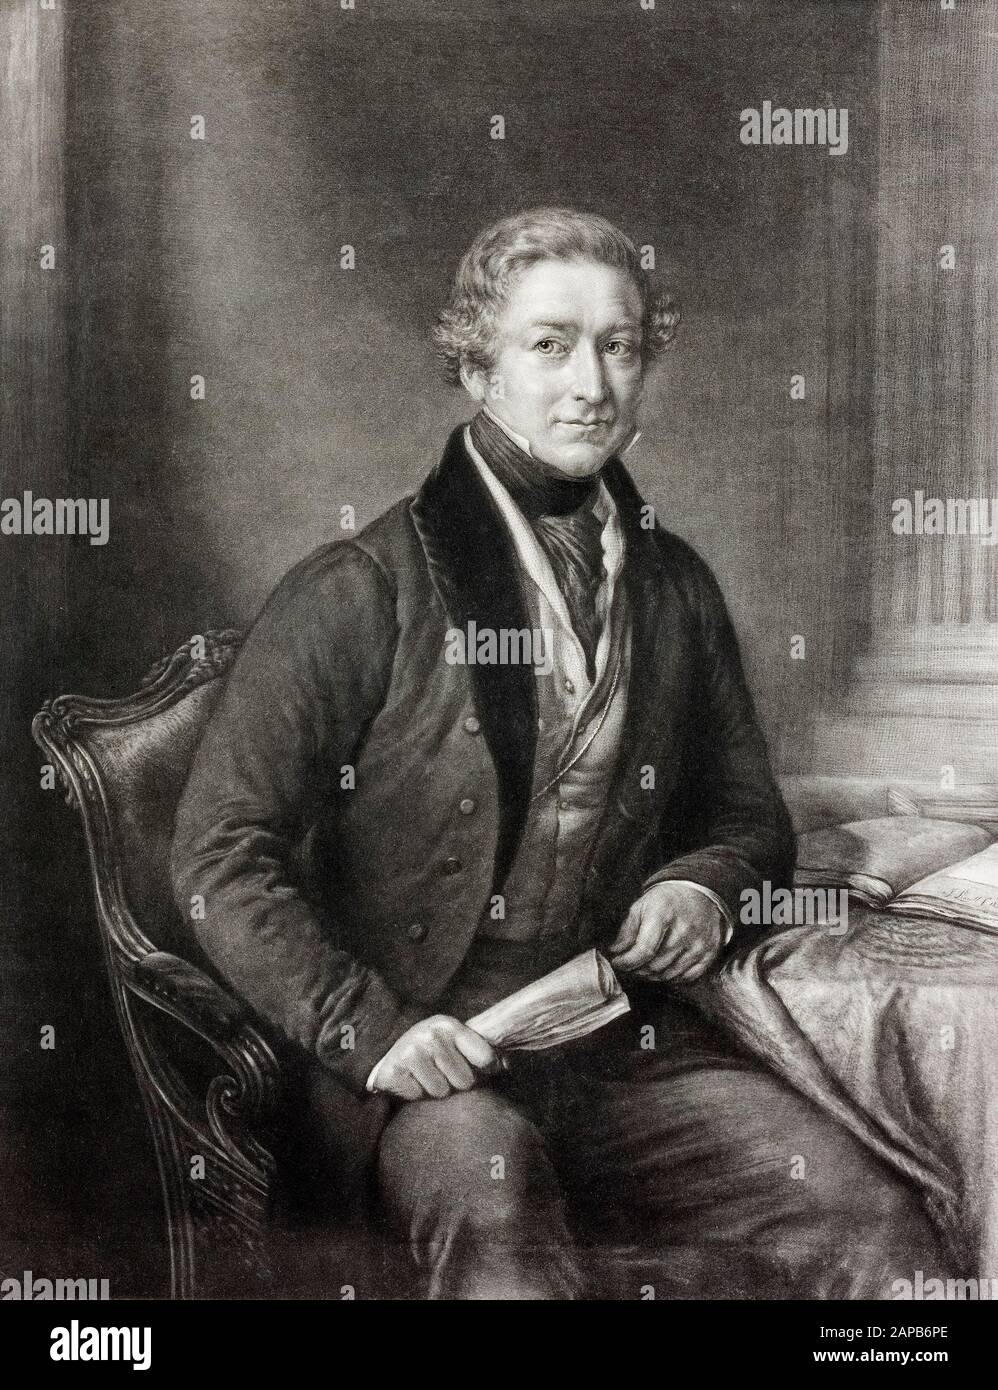 Sir Robert Peel (1788-1850), 2da Baronet, ex primer Ministro del Reino Unido, retrato, 1850 Foto de stock